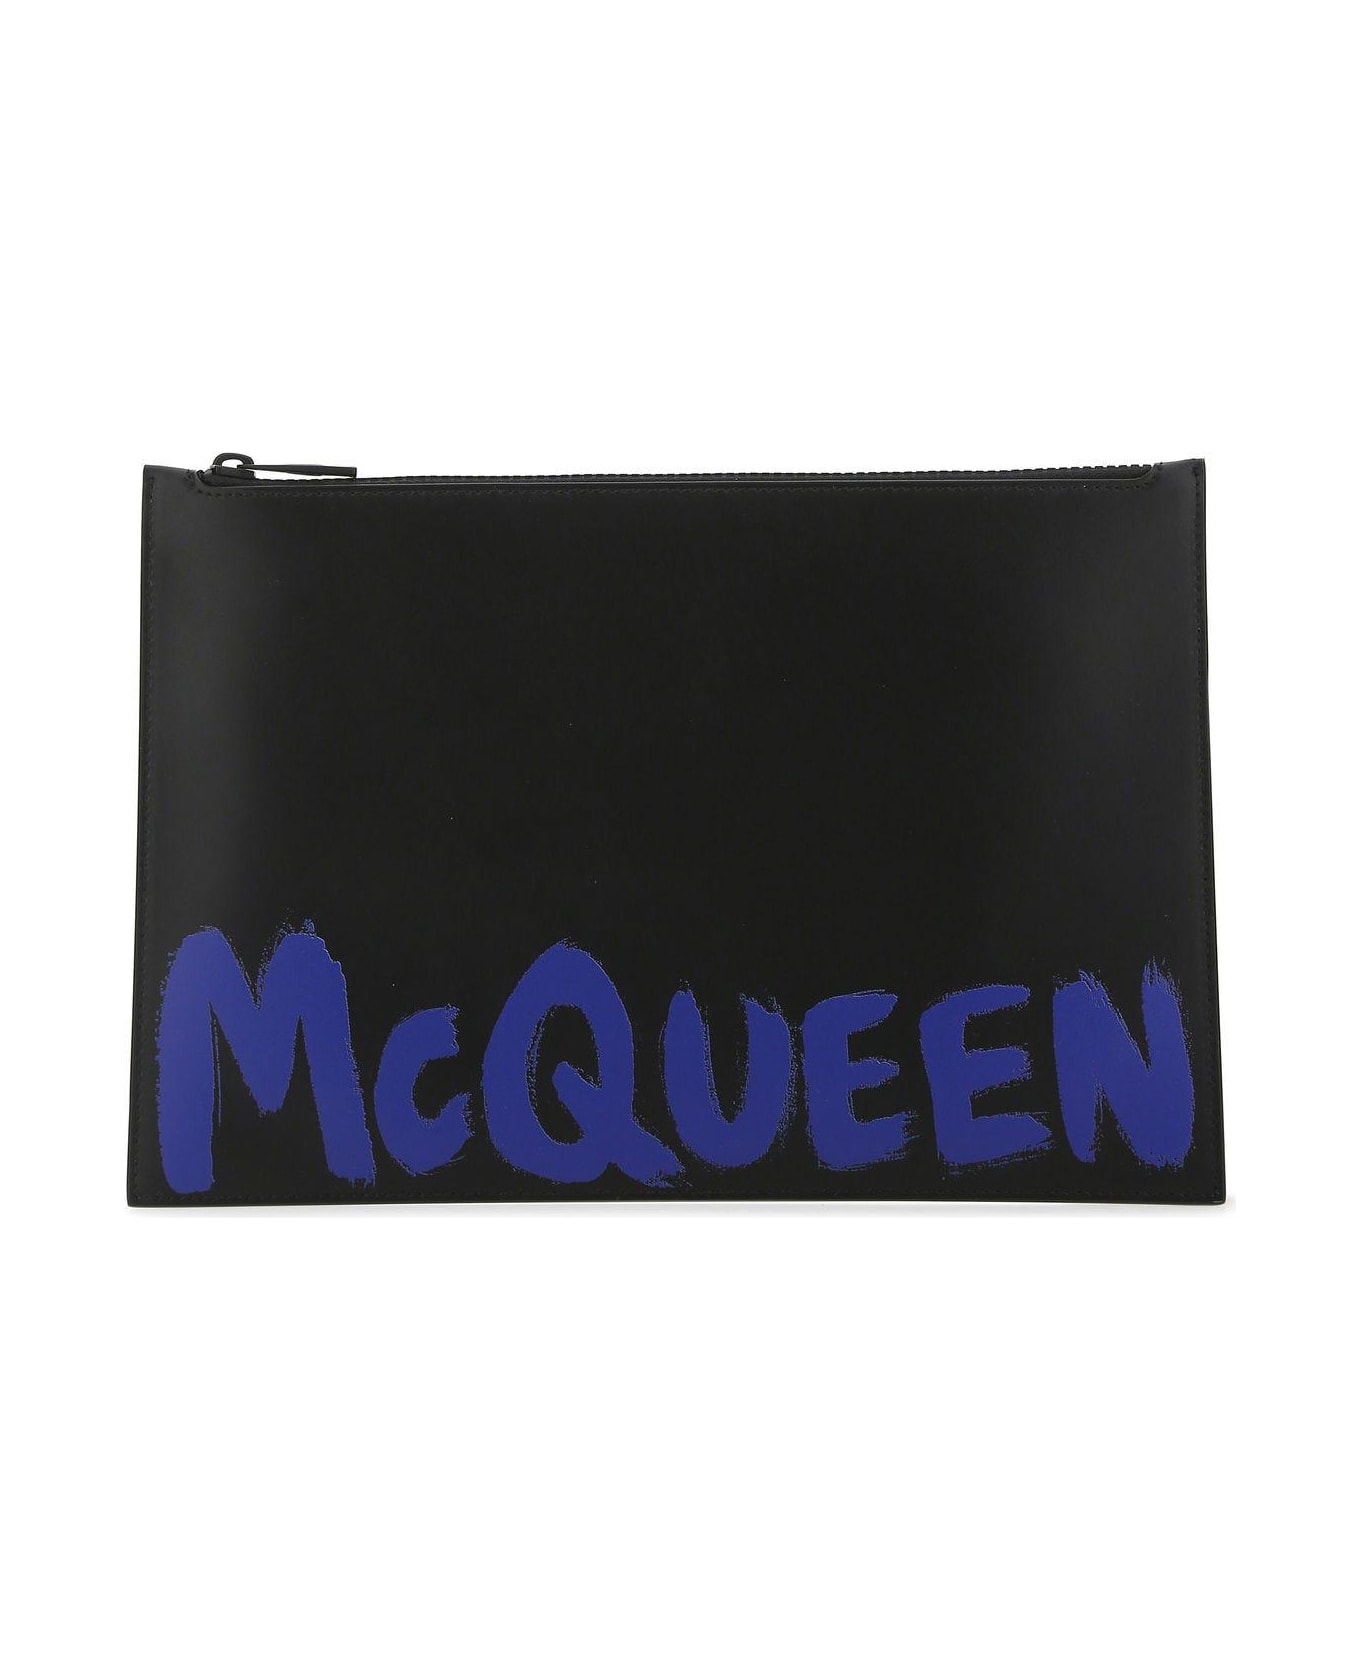 Alexander McQueen Black Leather Clutch - Black バッグ